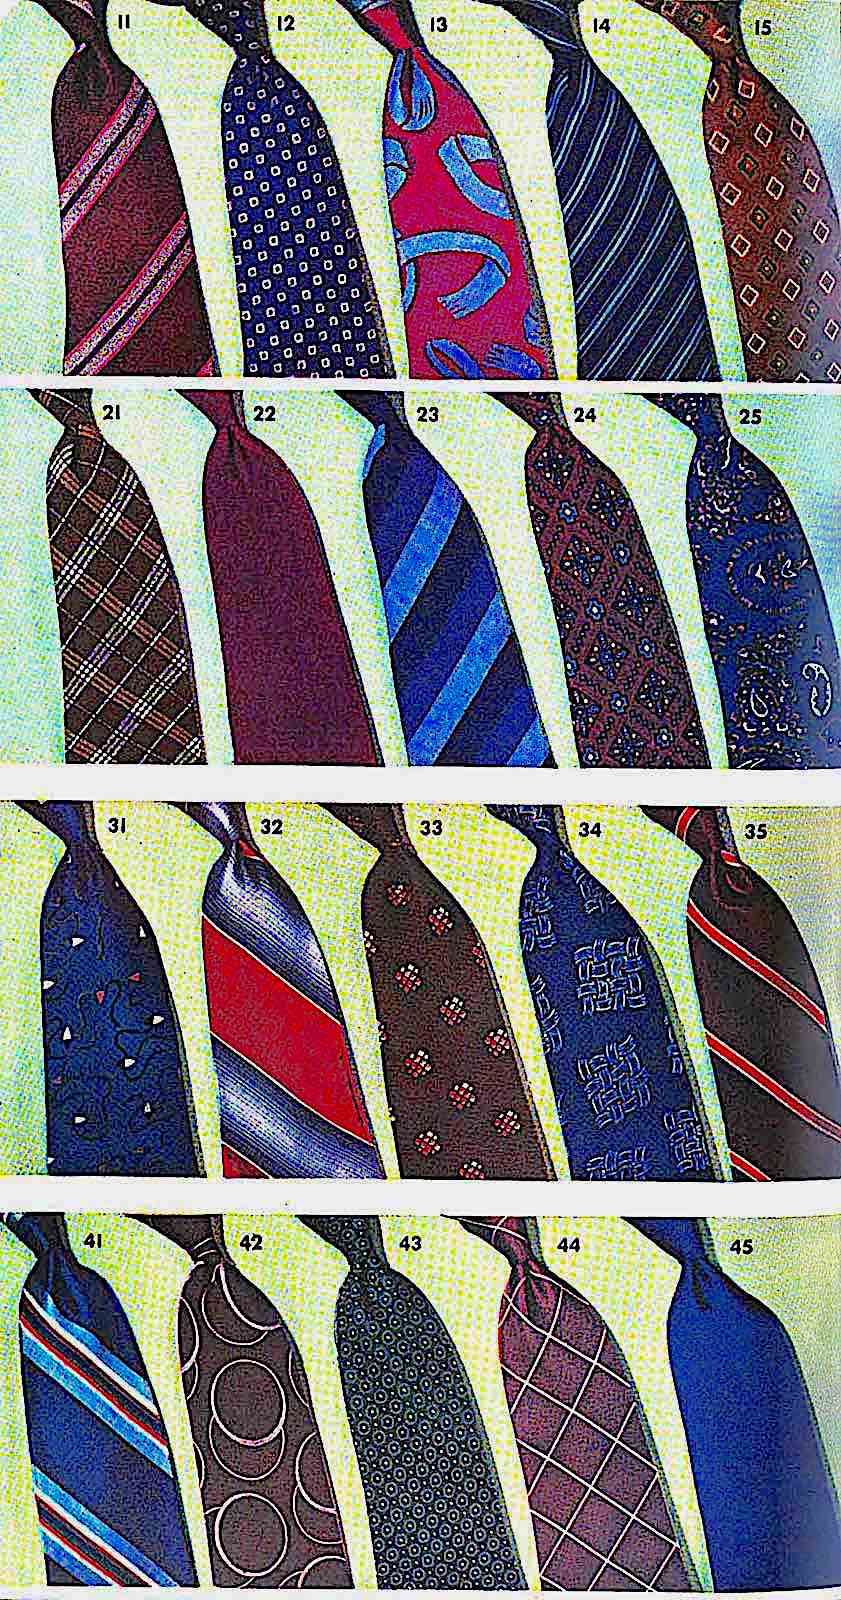 1941 men's neckties